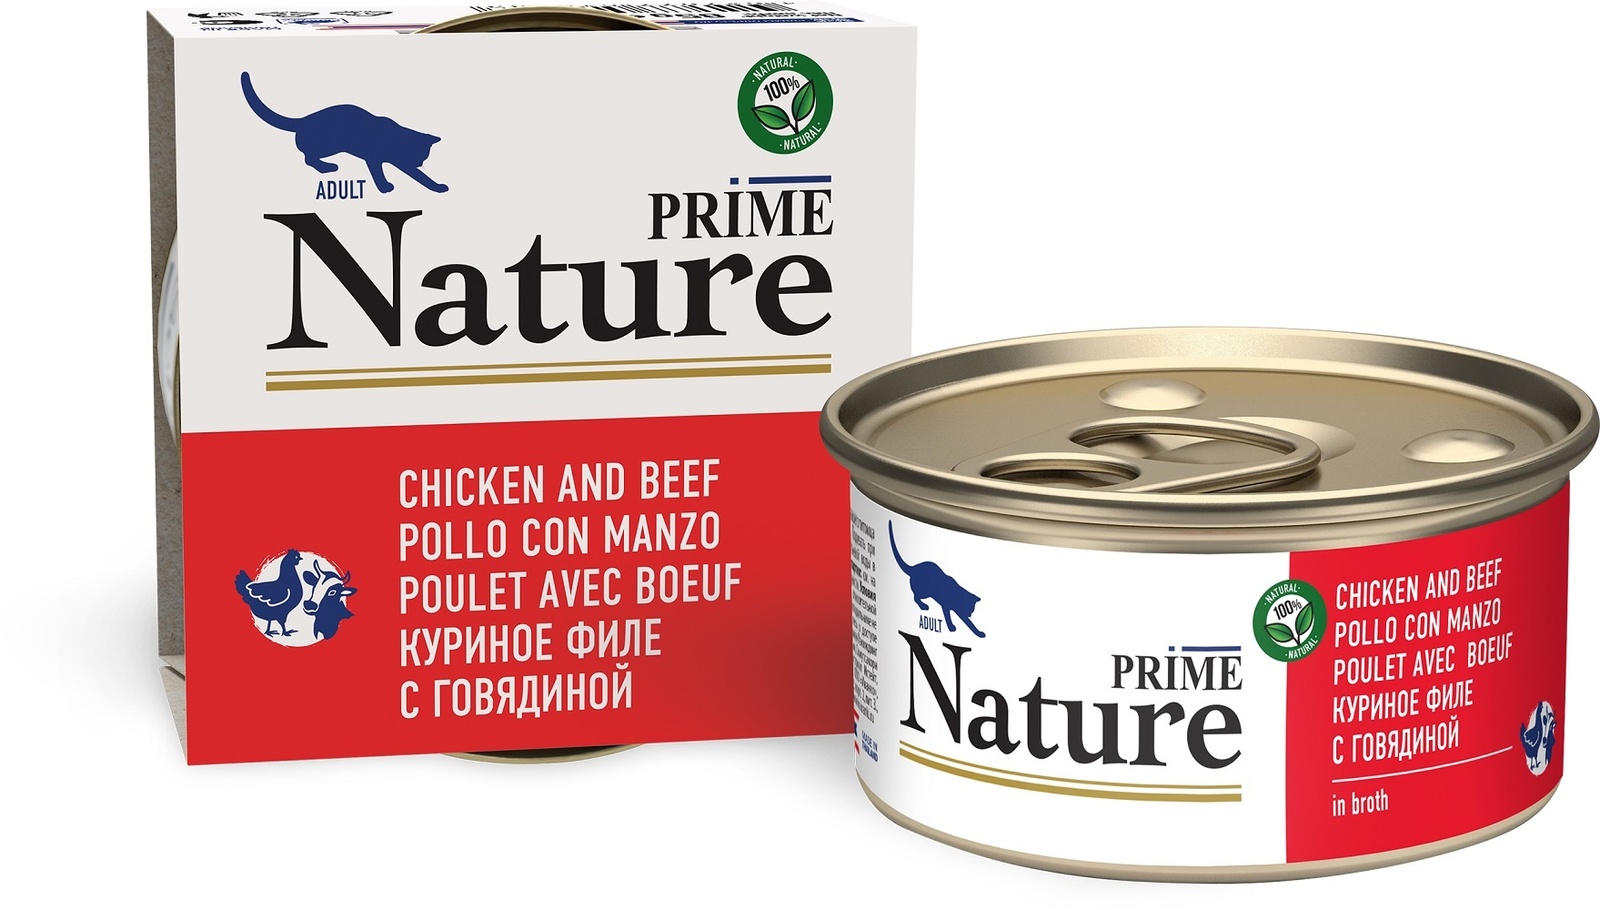 Prime Nature консервы для кошек: куриное филе с говядиной в бульоне (85 г) Prime Nature консервы для кошек: куриное филе с говядиной в бульоне (85 г) - фото 1